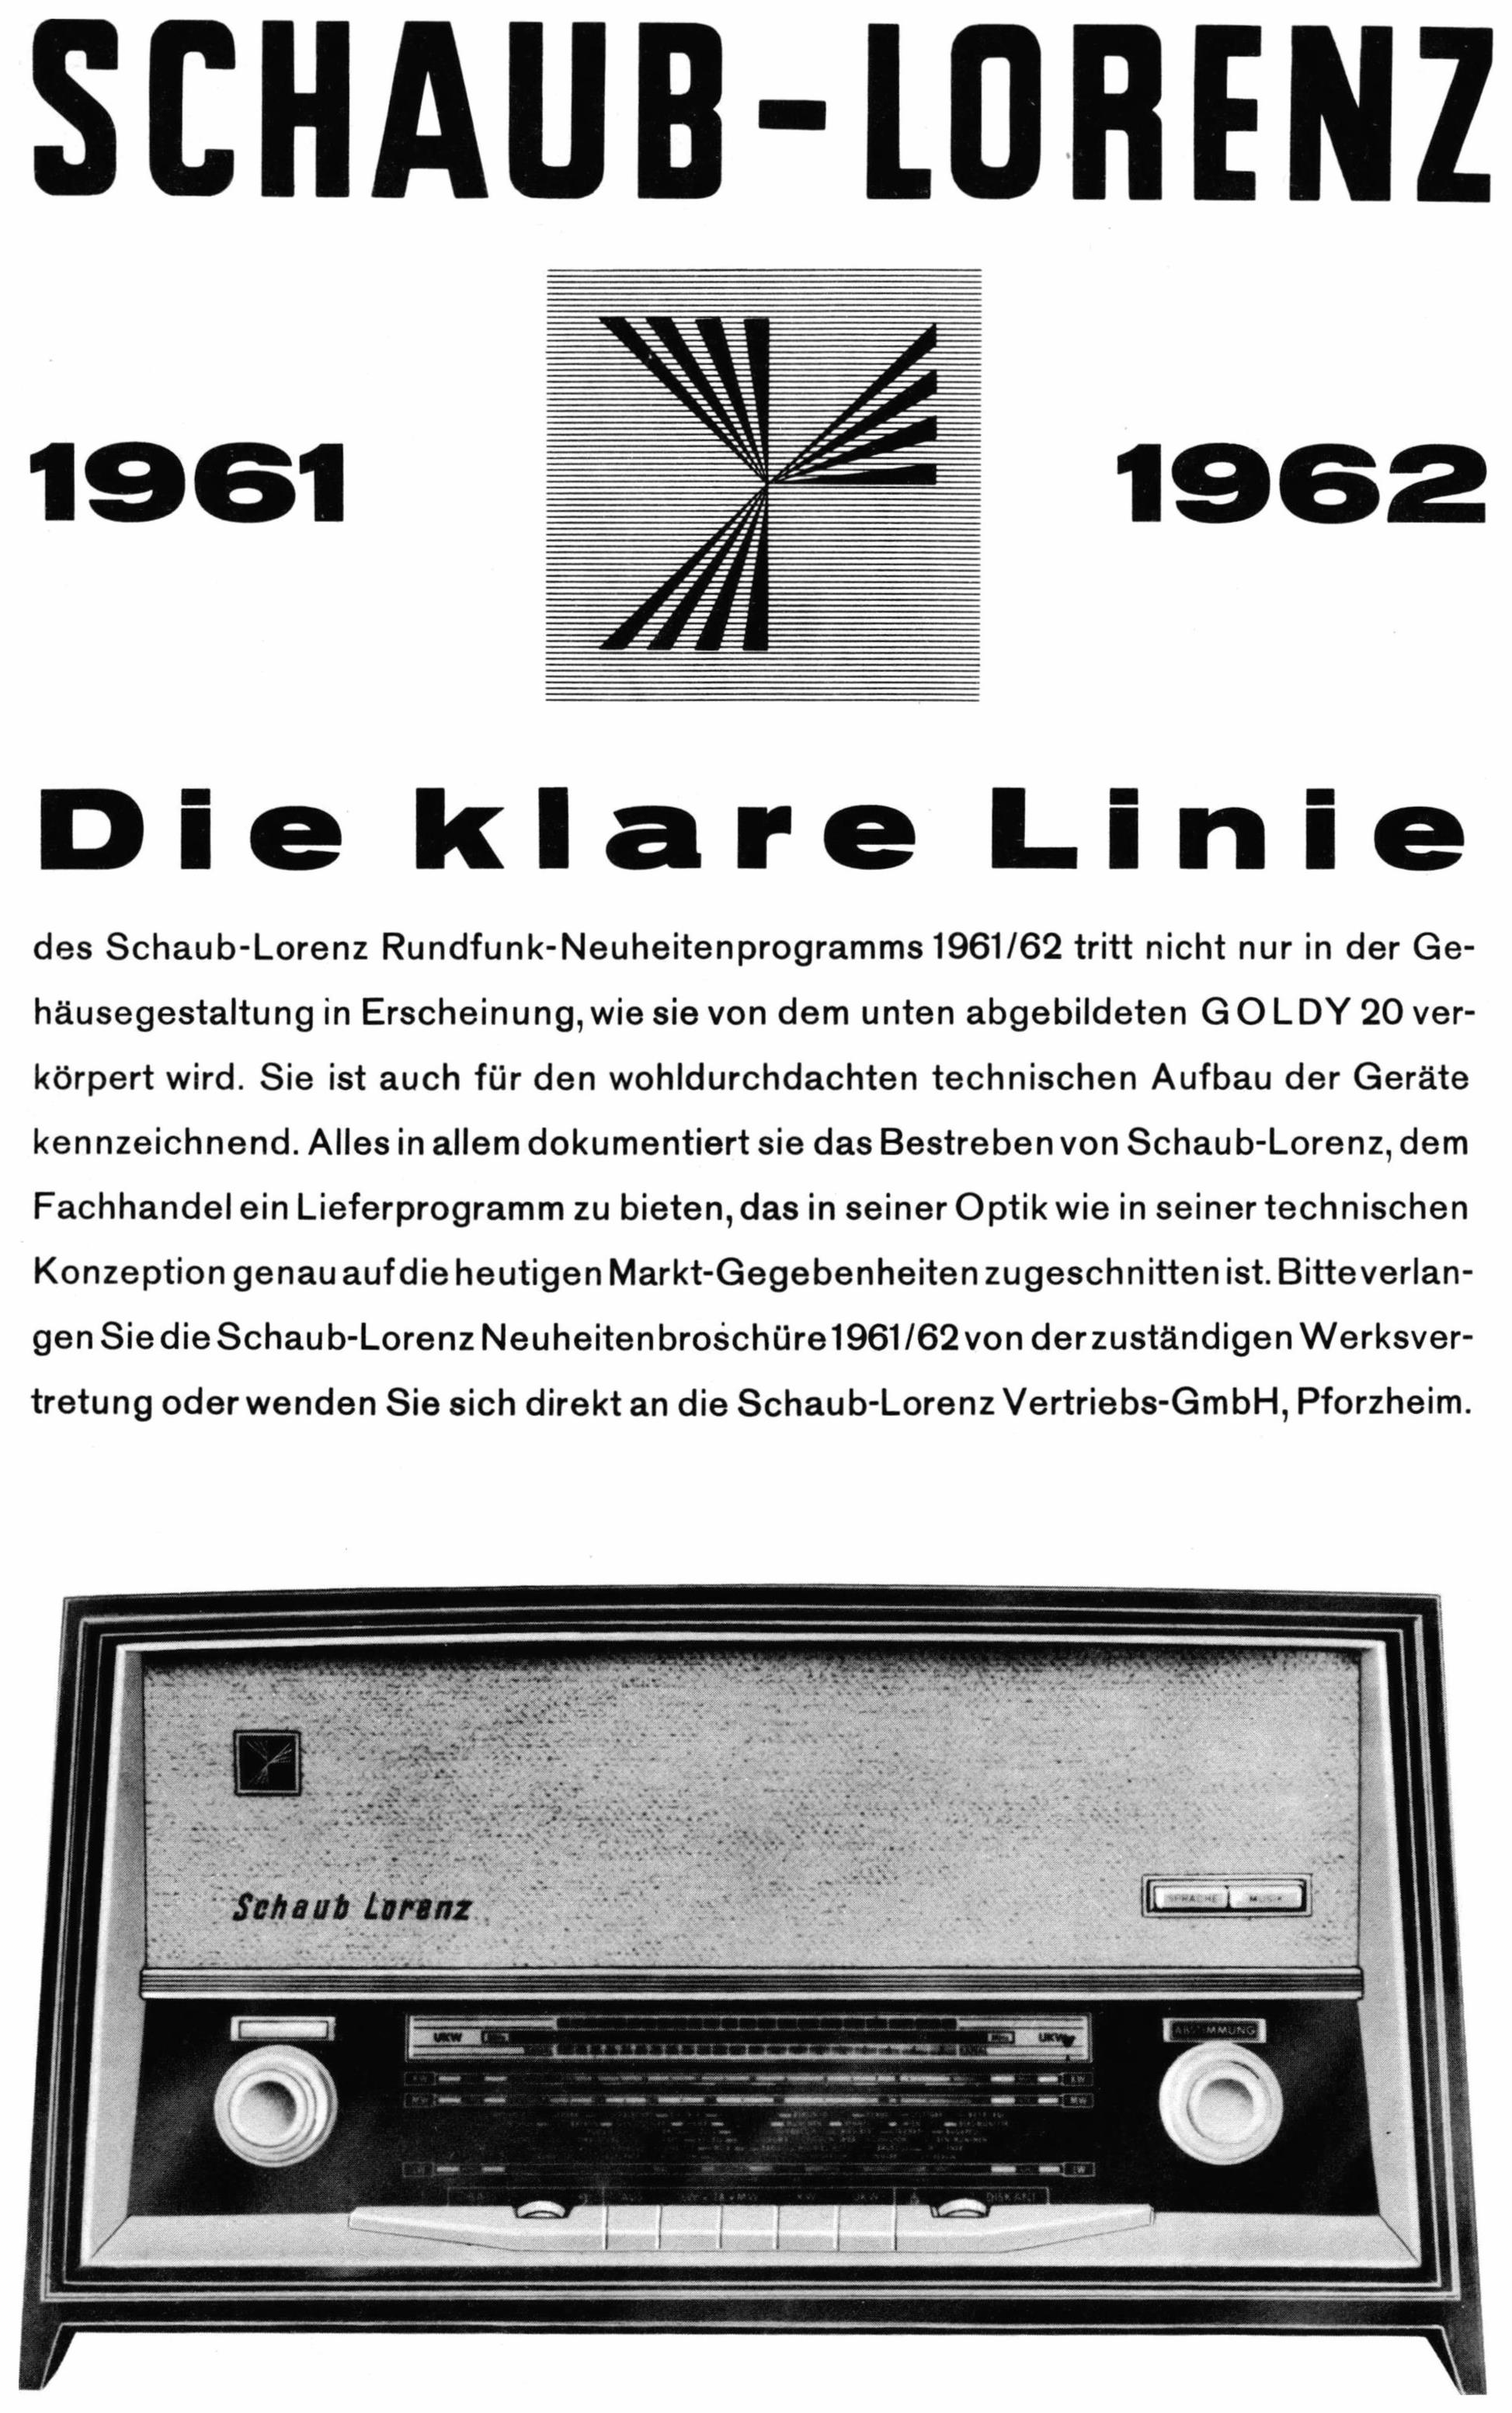 Schaub-Lorenz 1961 5.jpg